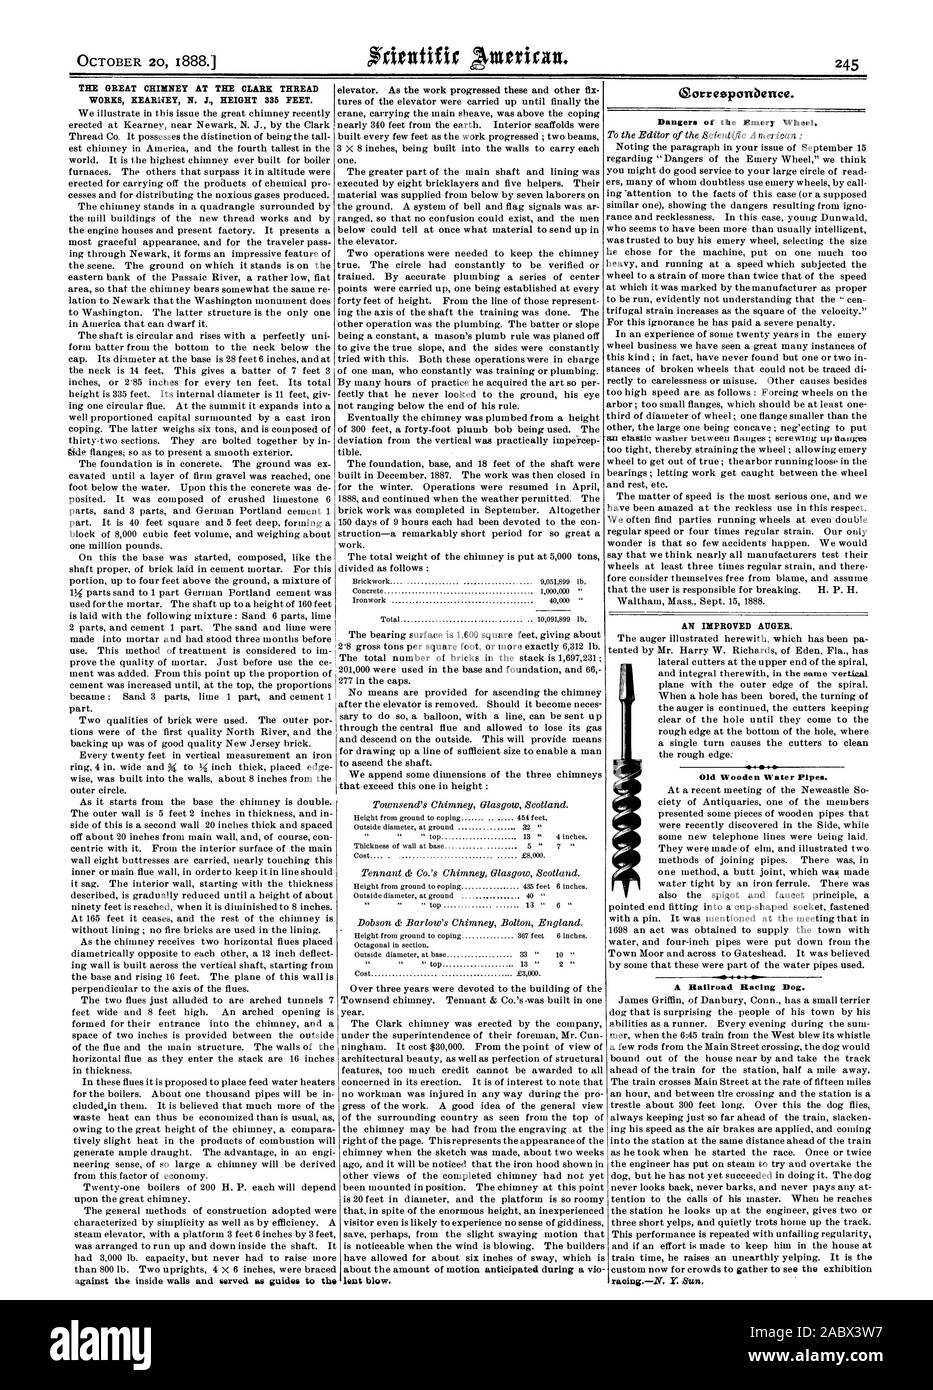 La grande cheminée À LA CLARK THREAD WORKS N. J. KEARNEY 335 pieds de hauteur. ascenseur. Comme le travail avançait ces et d'autres prêtés bluw fix. Oorresponbence. Dangers de la roue d'émeri. L'AMÉLIORATION DE LA VIS SANS FIN. 1 Les conduites d'eau en bois ancien. VP 40 Sir un chien de course de chemin de fer. La course. Y. Sun., Scientific American, 1888-10-20 Banque D'Images